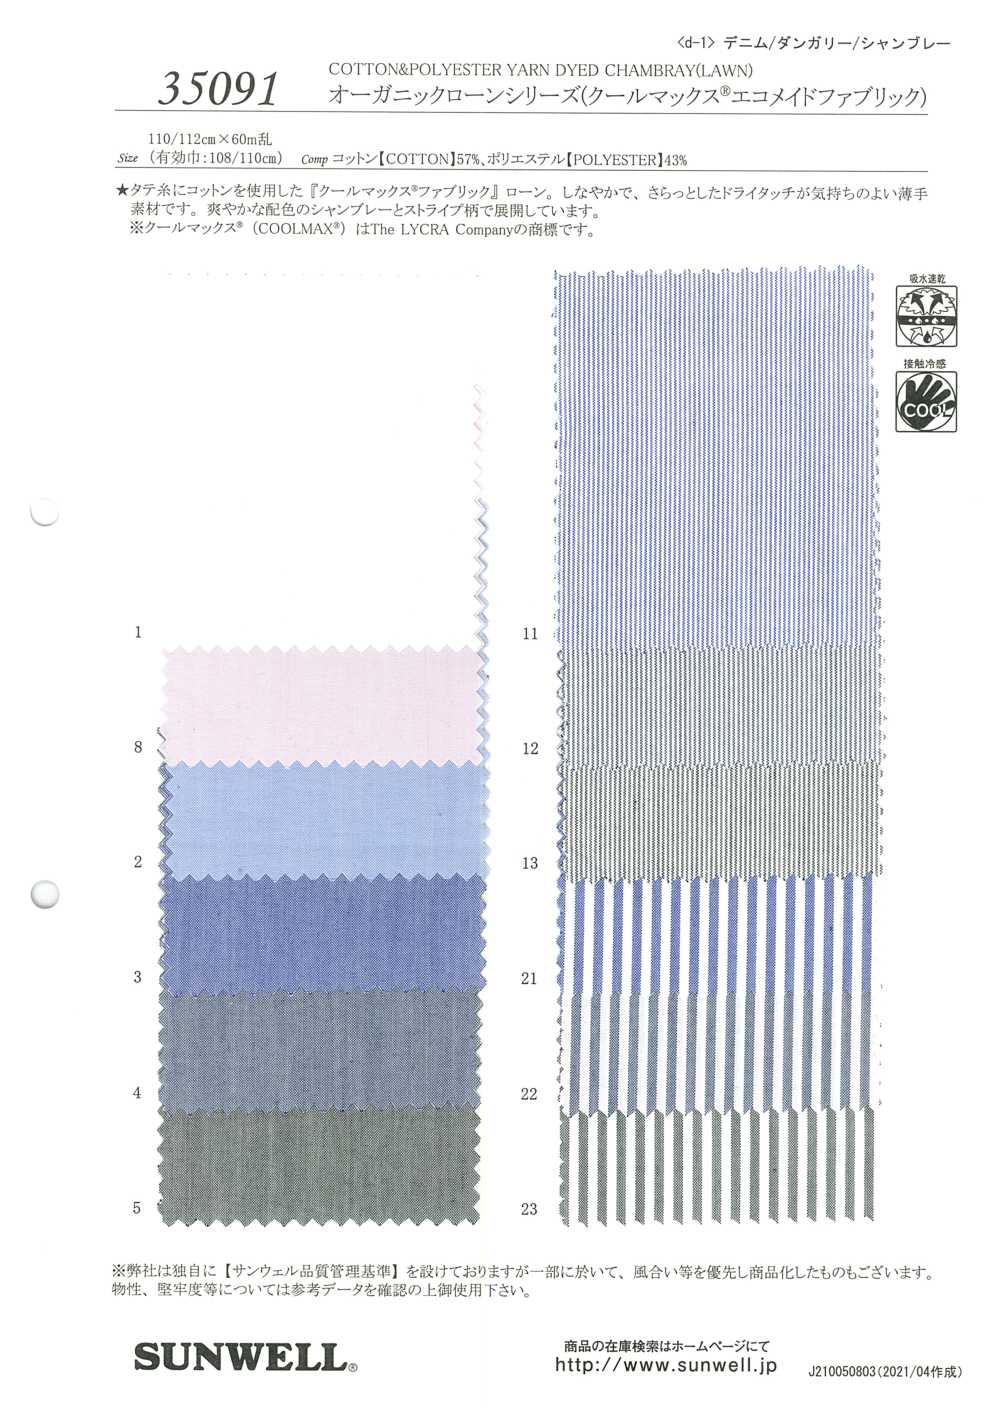 35091 Série De Pelouse Biologique (Tissu éco-fabriqué Coolmax (R))[Fabrication De Textile] SUNWELL